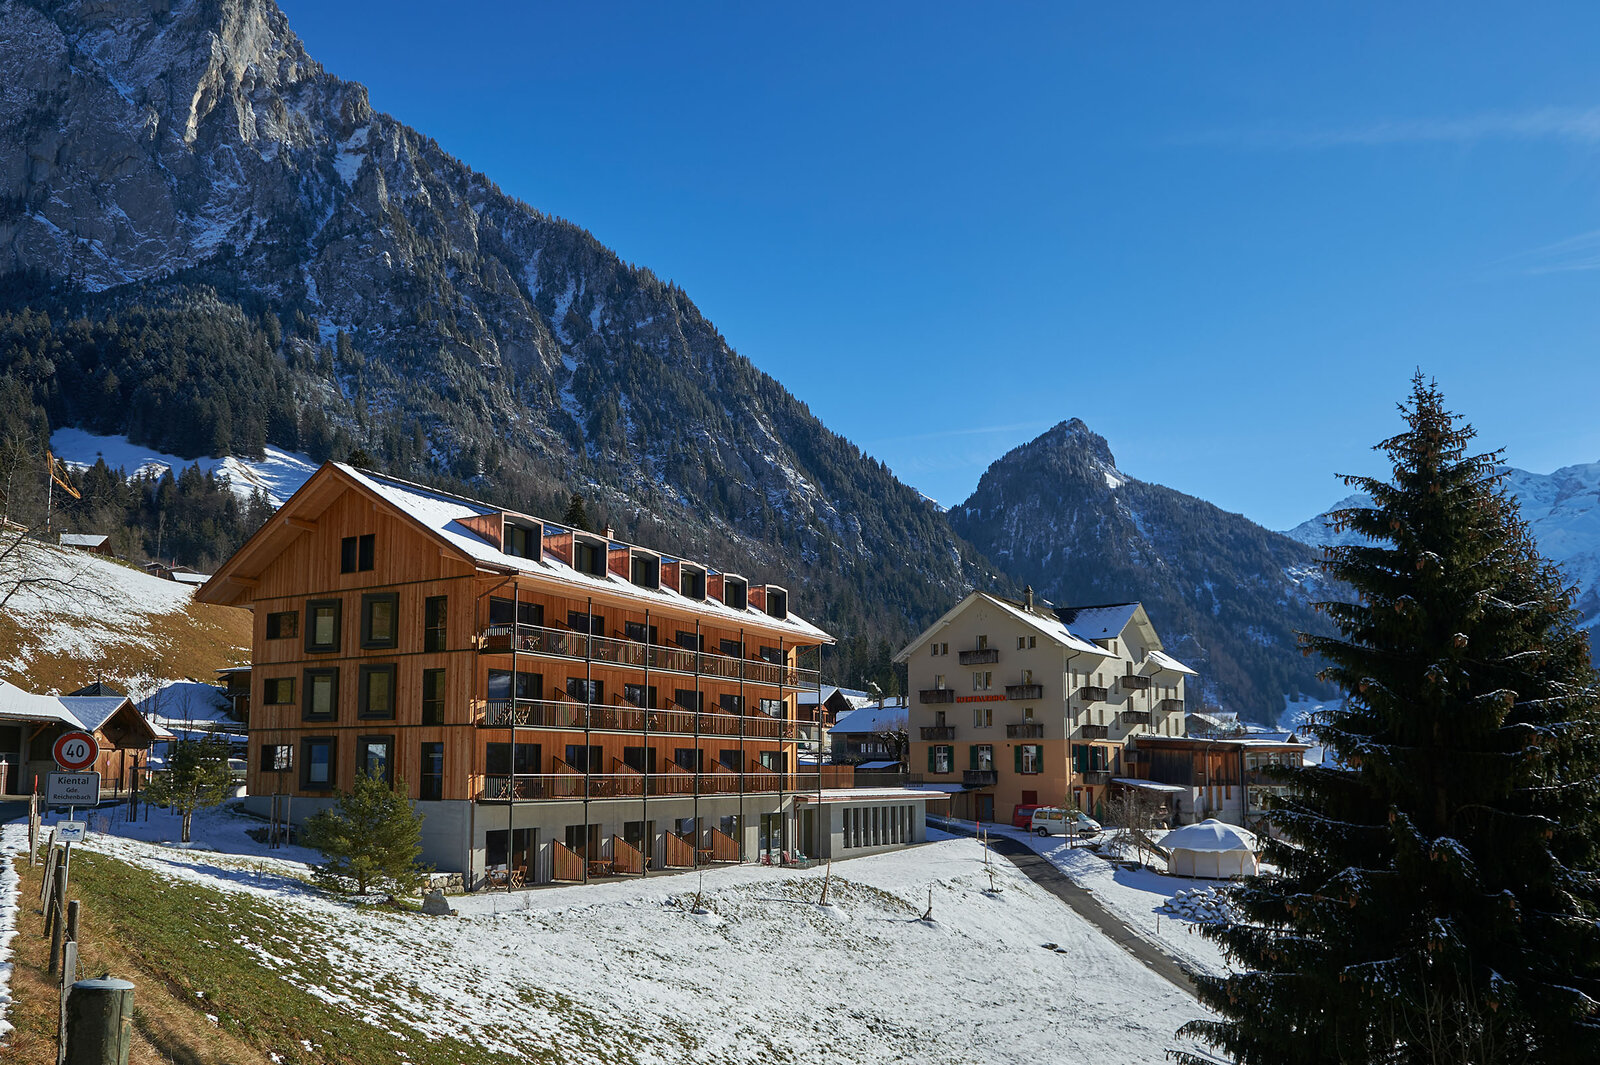  Der Kientalerhof im Berner Oberland ist Hotel, Kongresszentrum und Schulungsgebäude zugleich. Mit dem von der Schweizer Berghilfe mitunterstützten Neubau, der ausschliesslich mit natürlichen Materialien gebaut wurde, geht die Entwicklung weiter.